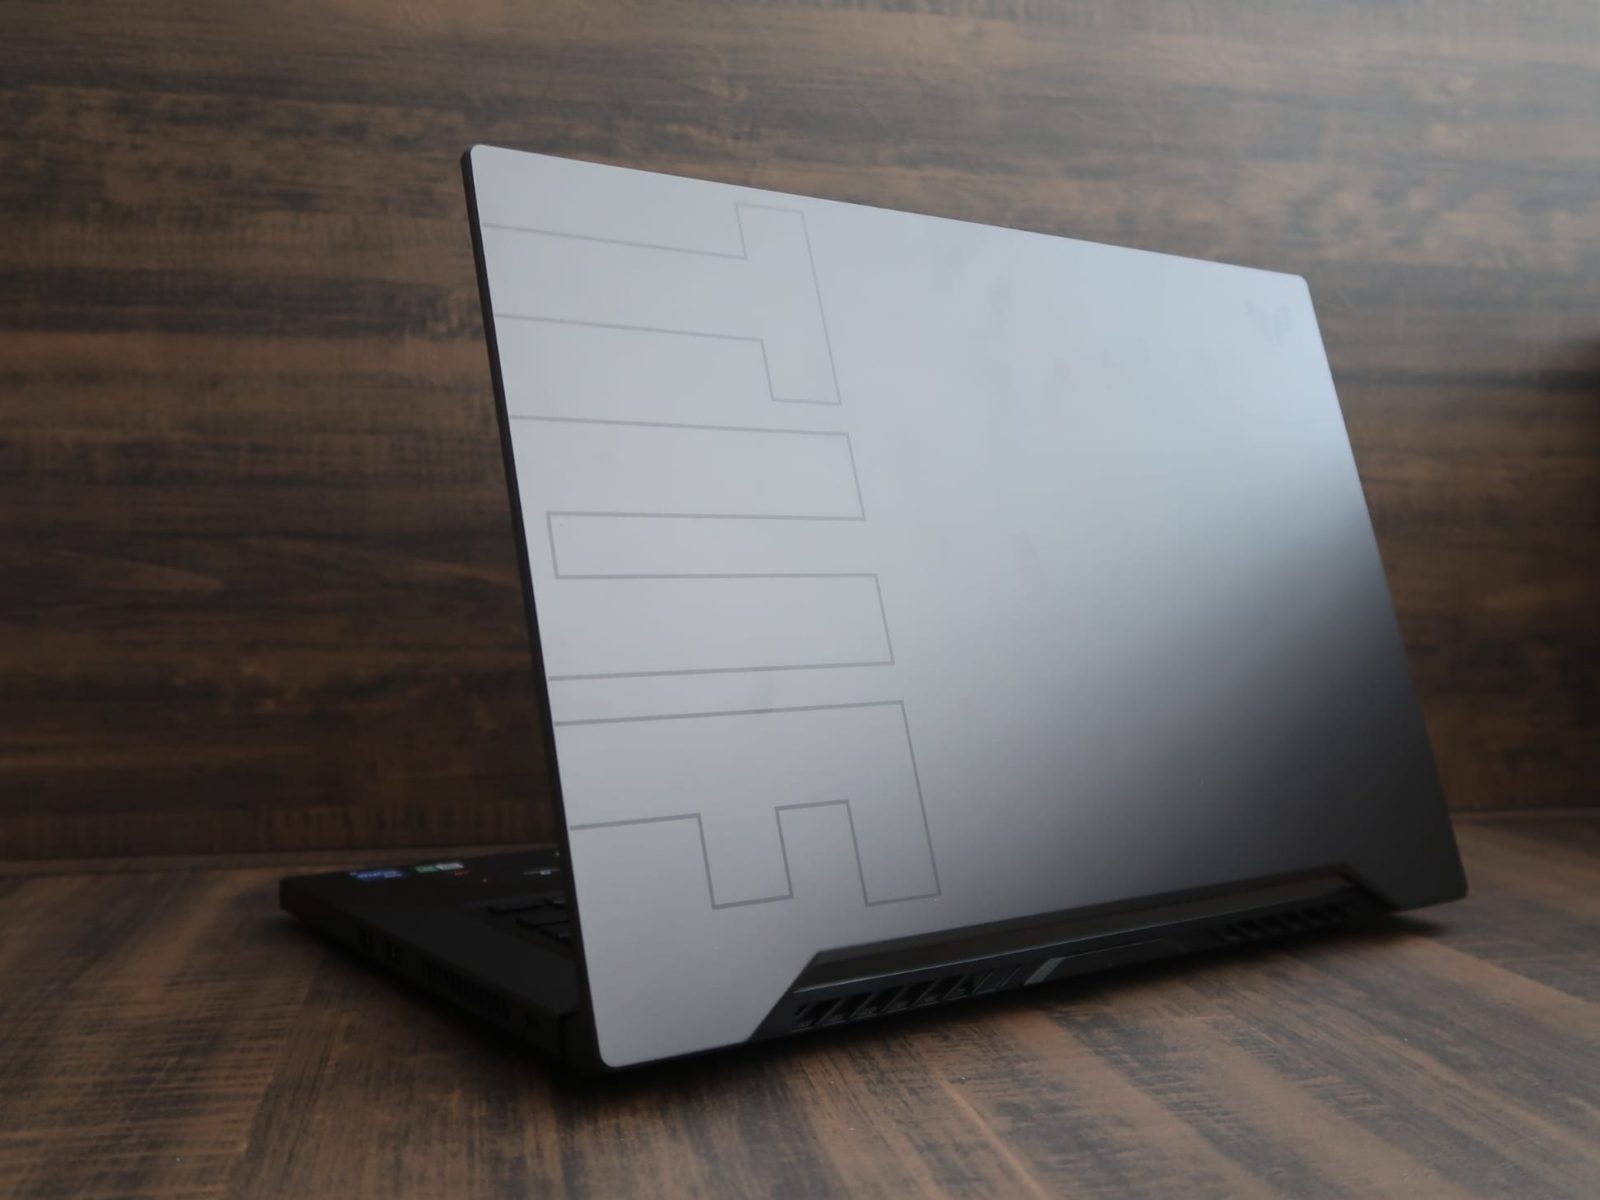 Asus TUF Dash F15 (2021) gaming laptop review